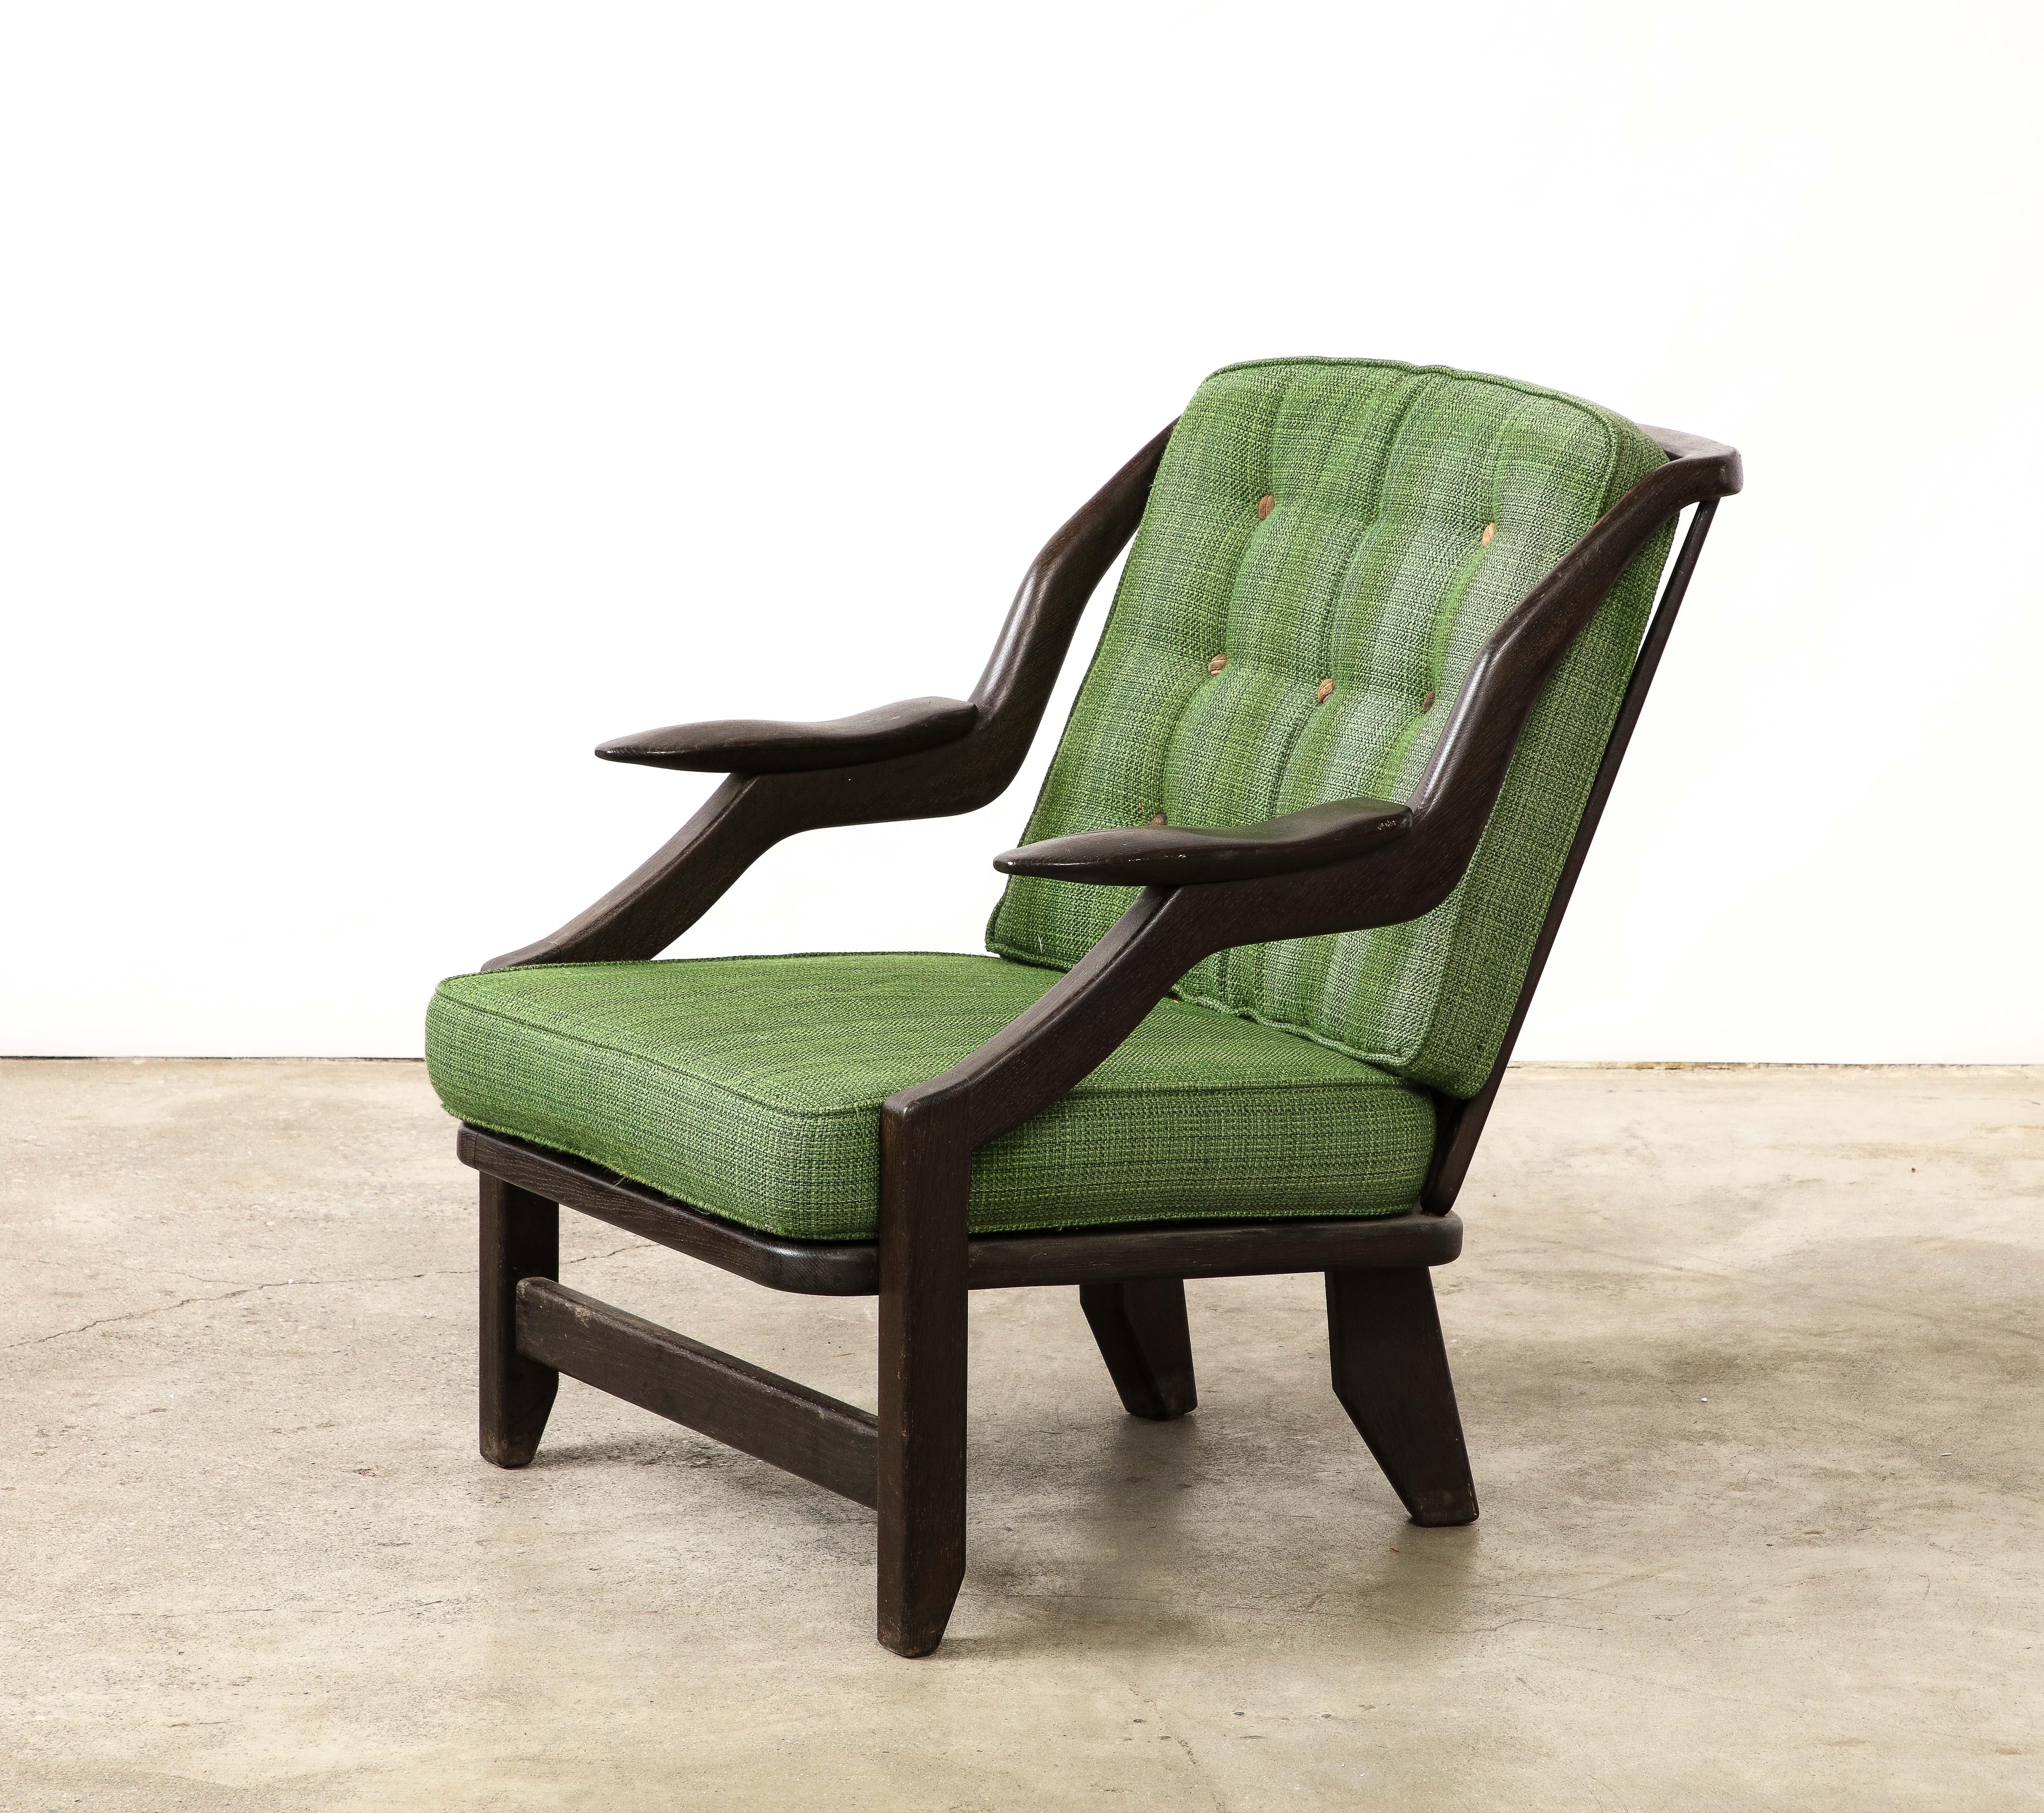 Dieser seltene Sessel von Guillerme et Chambron hat einen schön gealterten Holzrahmen mit skulpturalen Armlehnen. Die Kissen sind original für den Stuhl und müssen ersetzt werden. Auf Wunsch sind wir gerne bereit, eine Neupolsterung vorzunehmen.